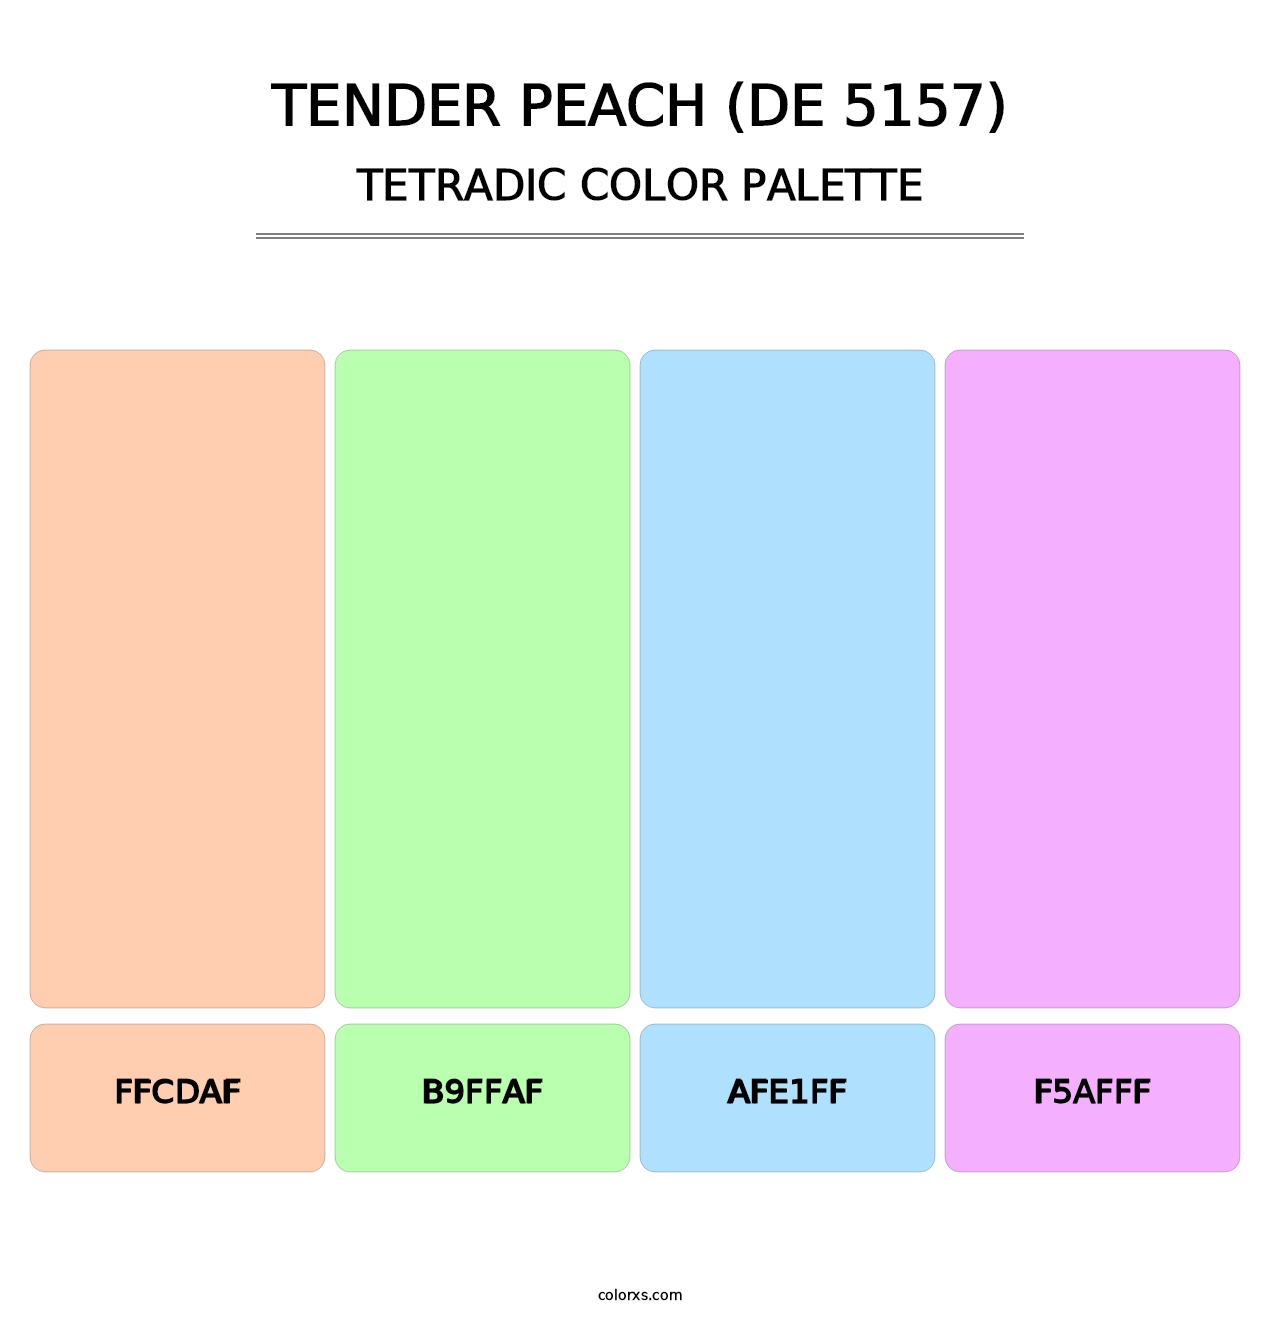 Tender Peach (DE 5157) - Tetradic Color Palette